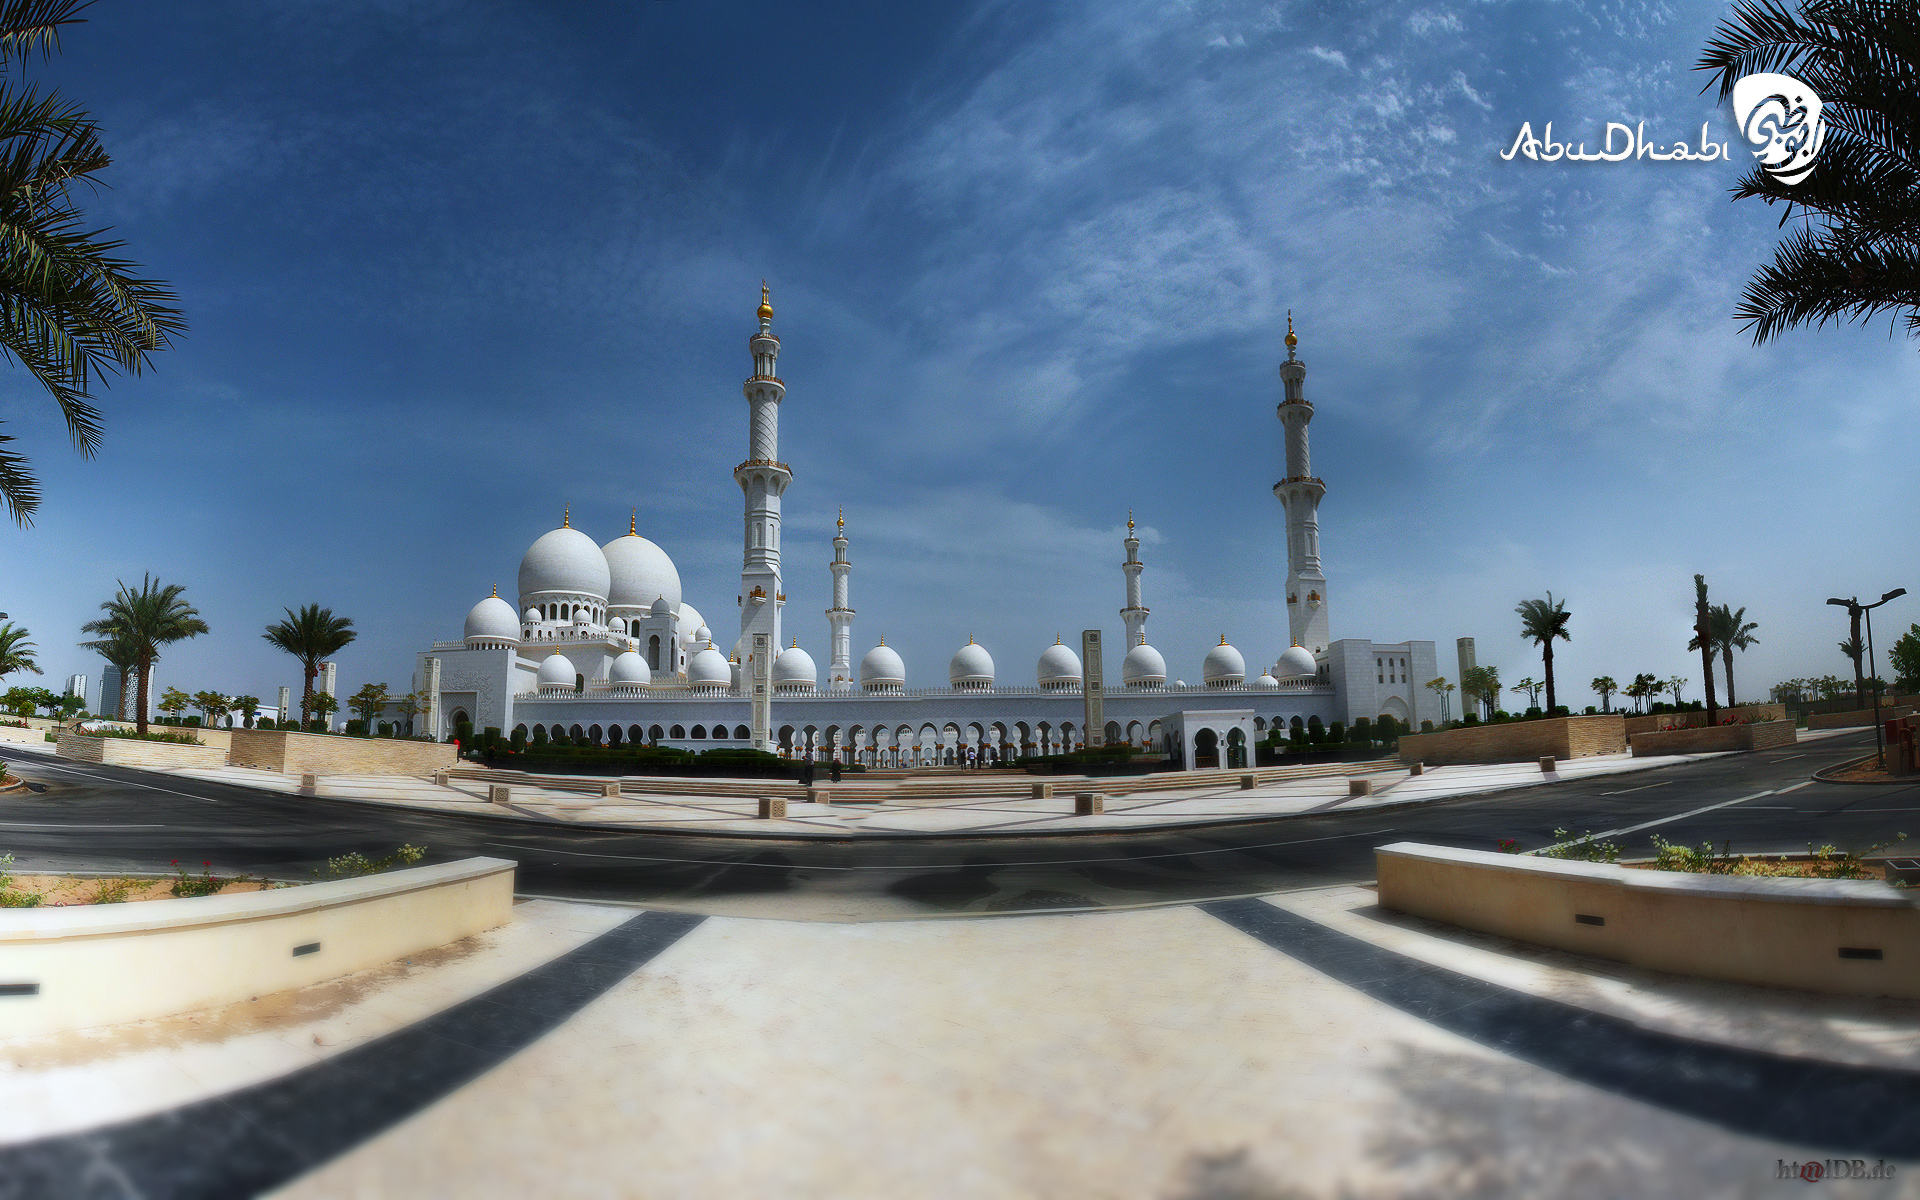 Abu_dhabi_Grand_Mosque_outside.jpg